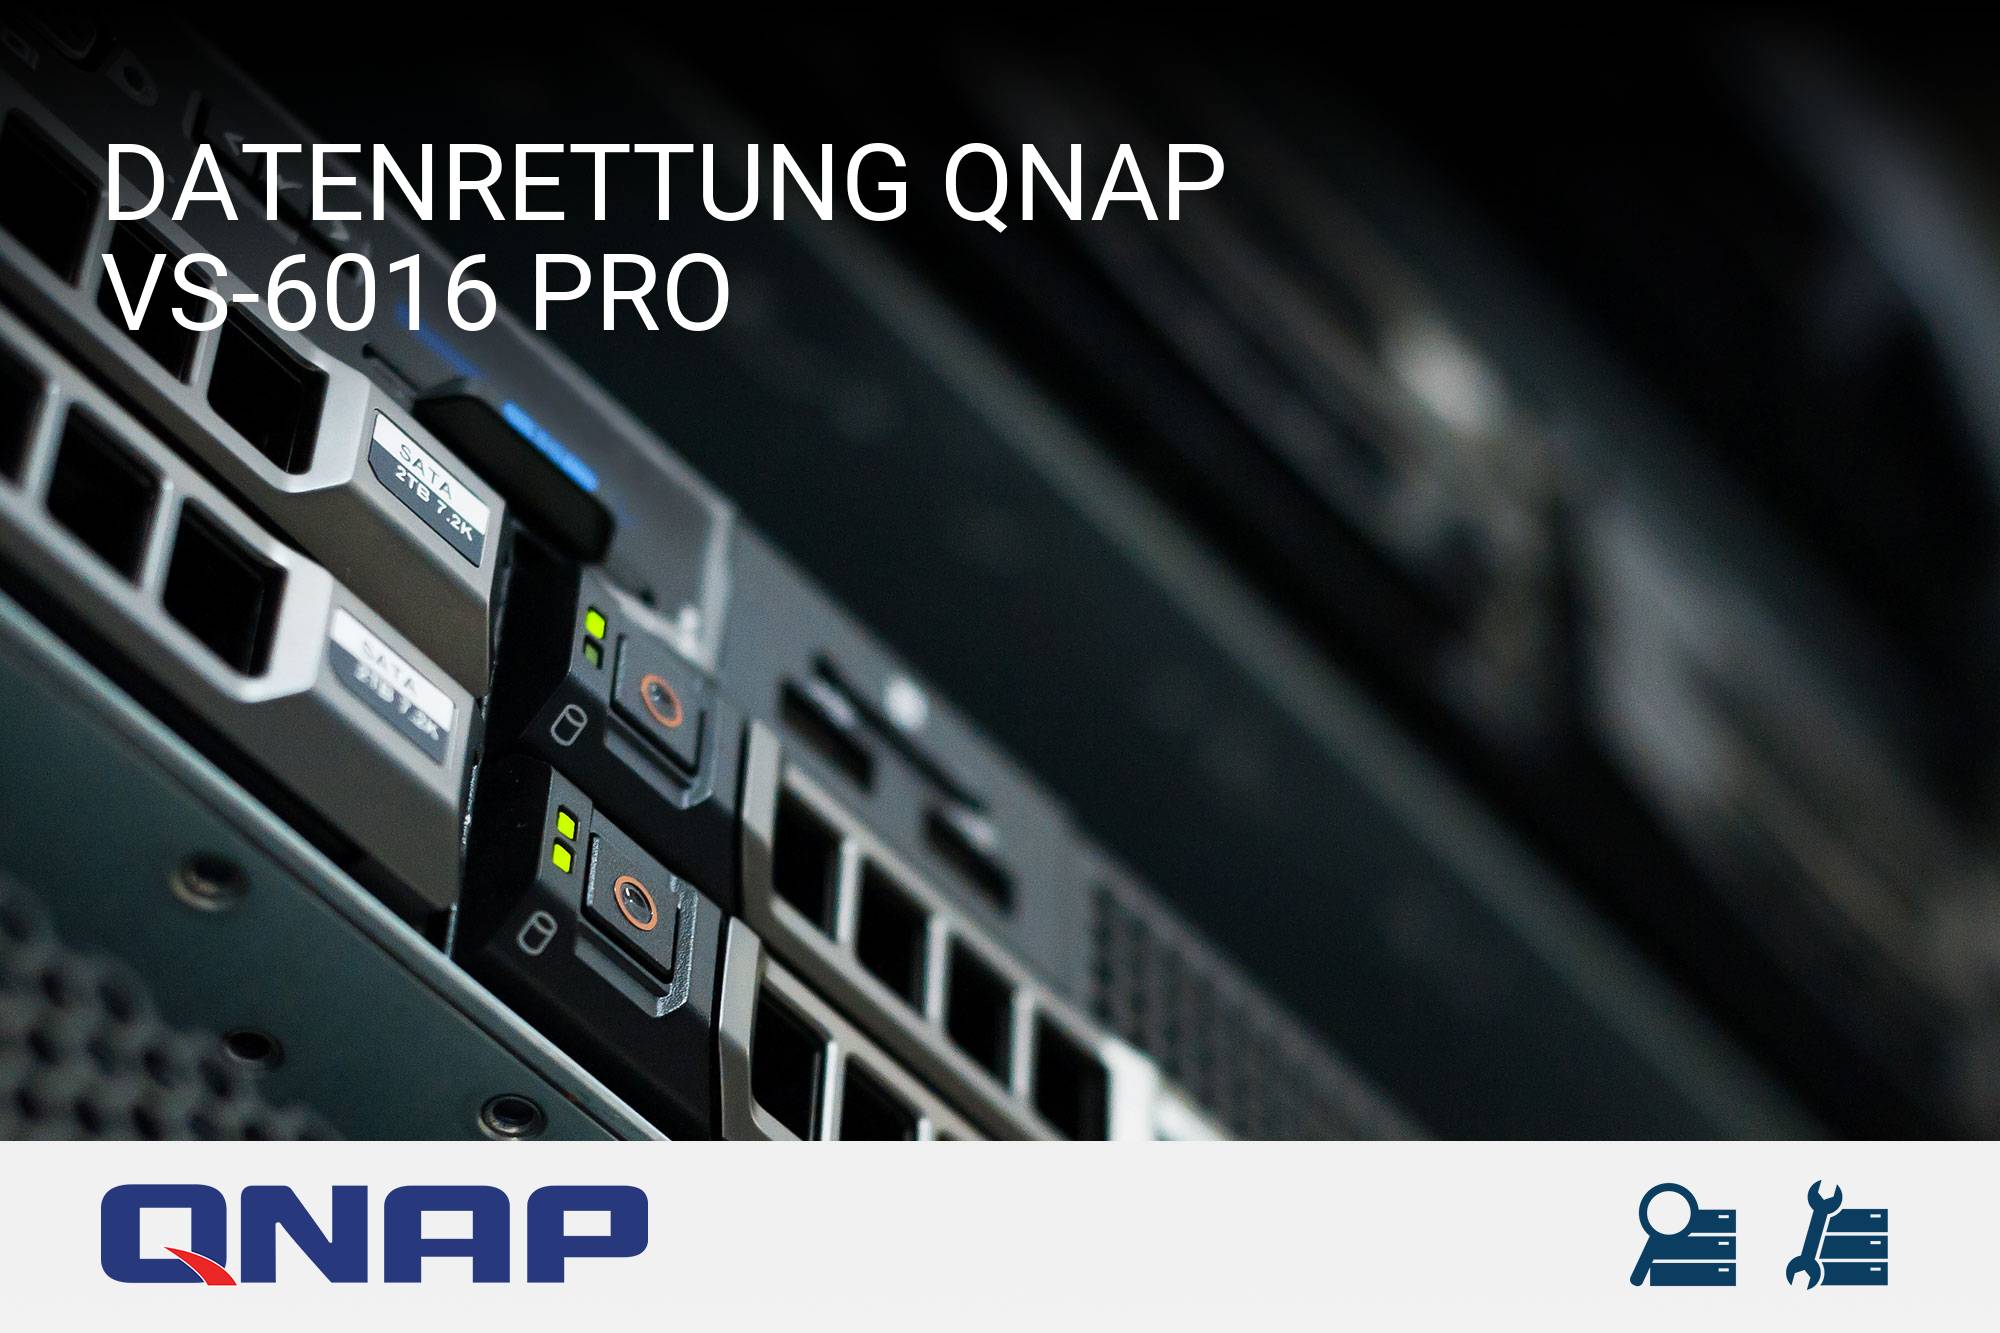 QNAP VS-6016 Pro